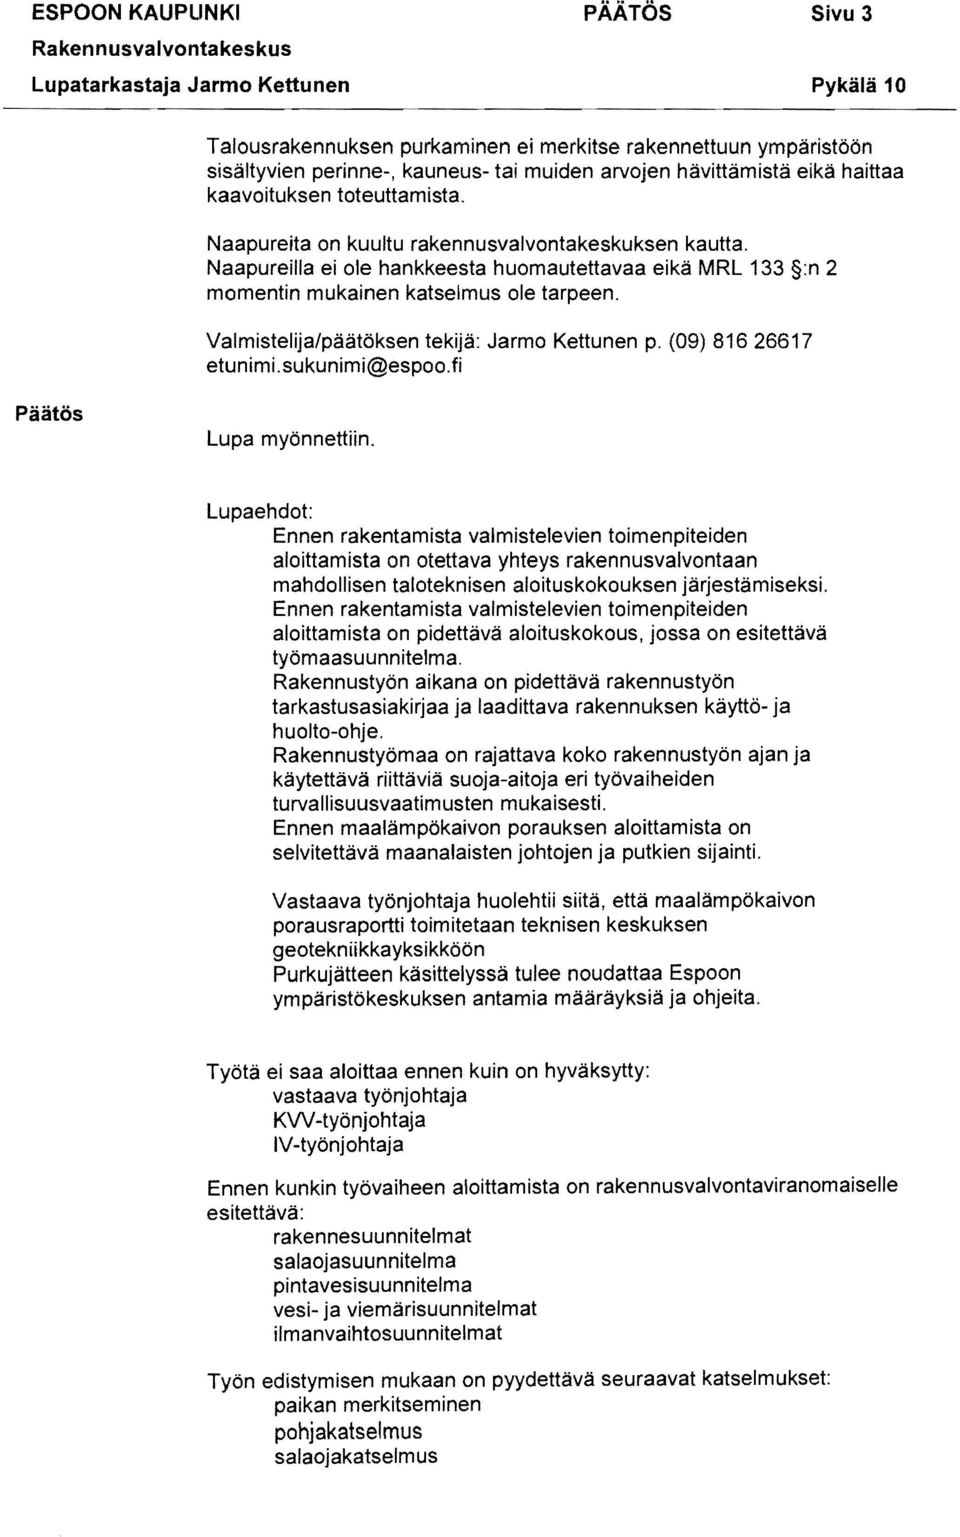 Valmistelija/päätöksen tekijä: Jarmo Kettunen p. (09) 81626617 etunimi.sukunimi@espoo.fi Päätös Lupa myönnettiin.